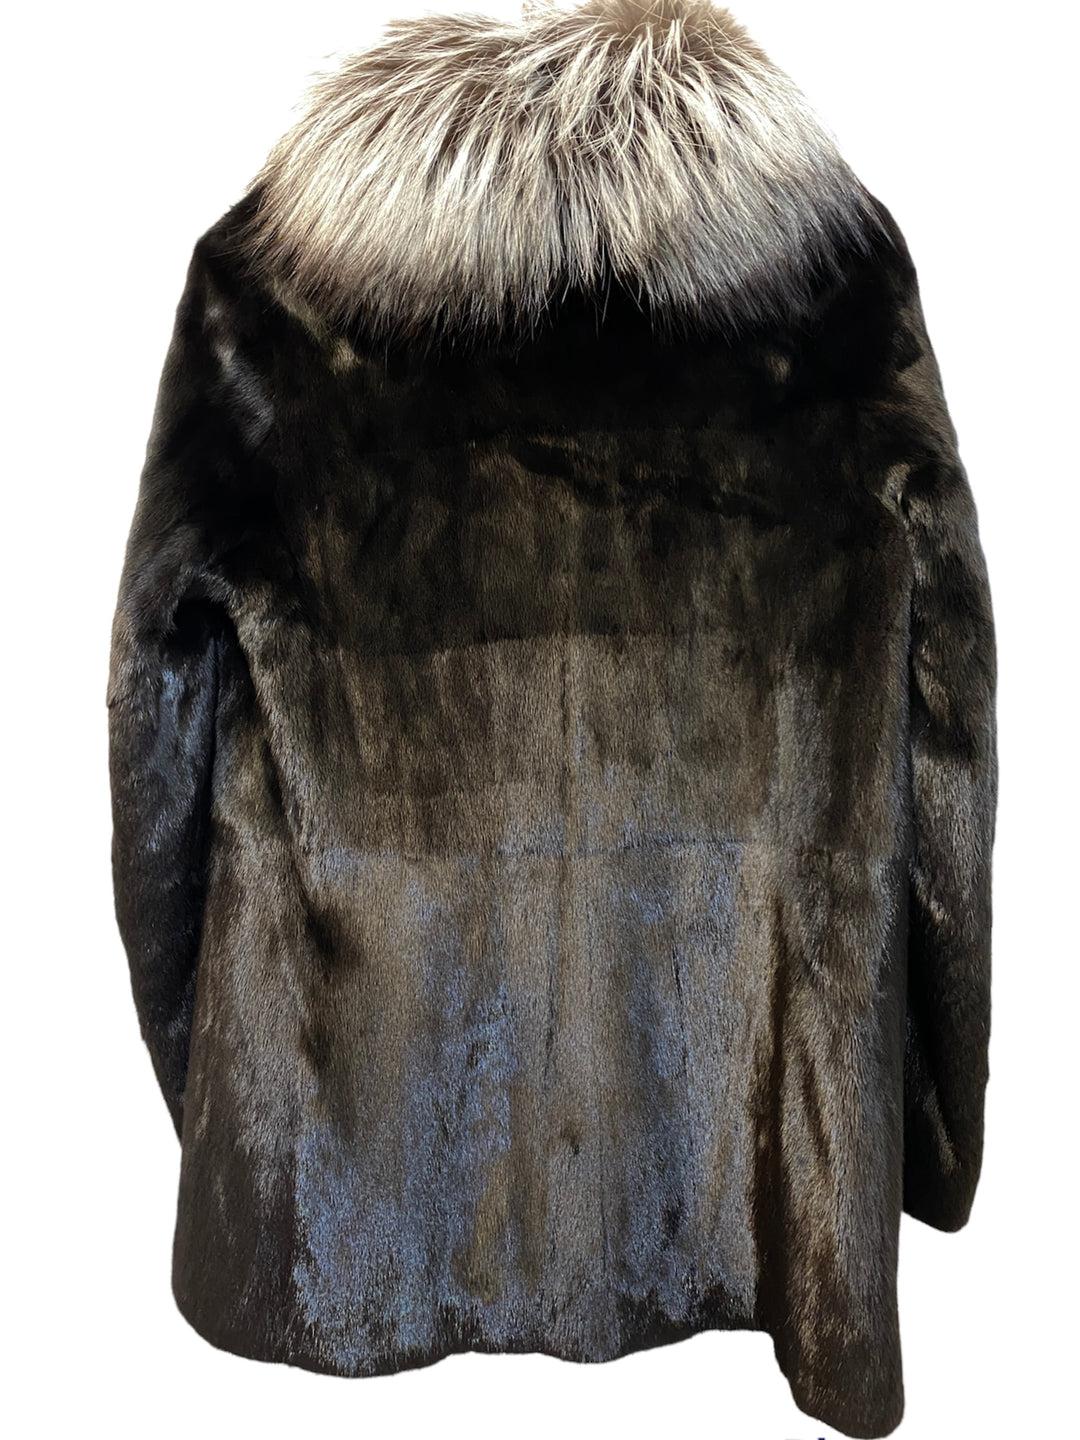 Manteau en vison Christian Dior

Condit : Très bon état
Couleur :  noir
Taille : 38
MATERIAL : 100% vison, 100% fourrure de renard sur le col

Ce manteau en vison de Christian Dior est une pièce étonnante et élégante, parfaite pour toutes les